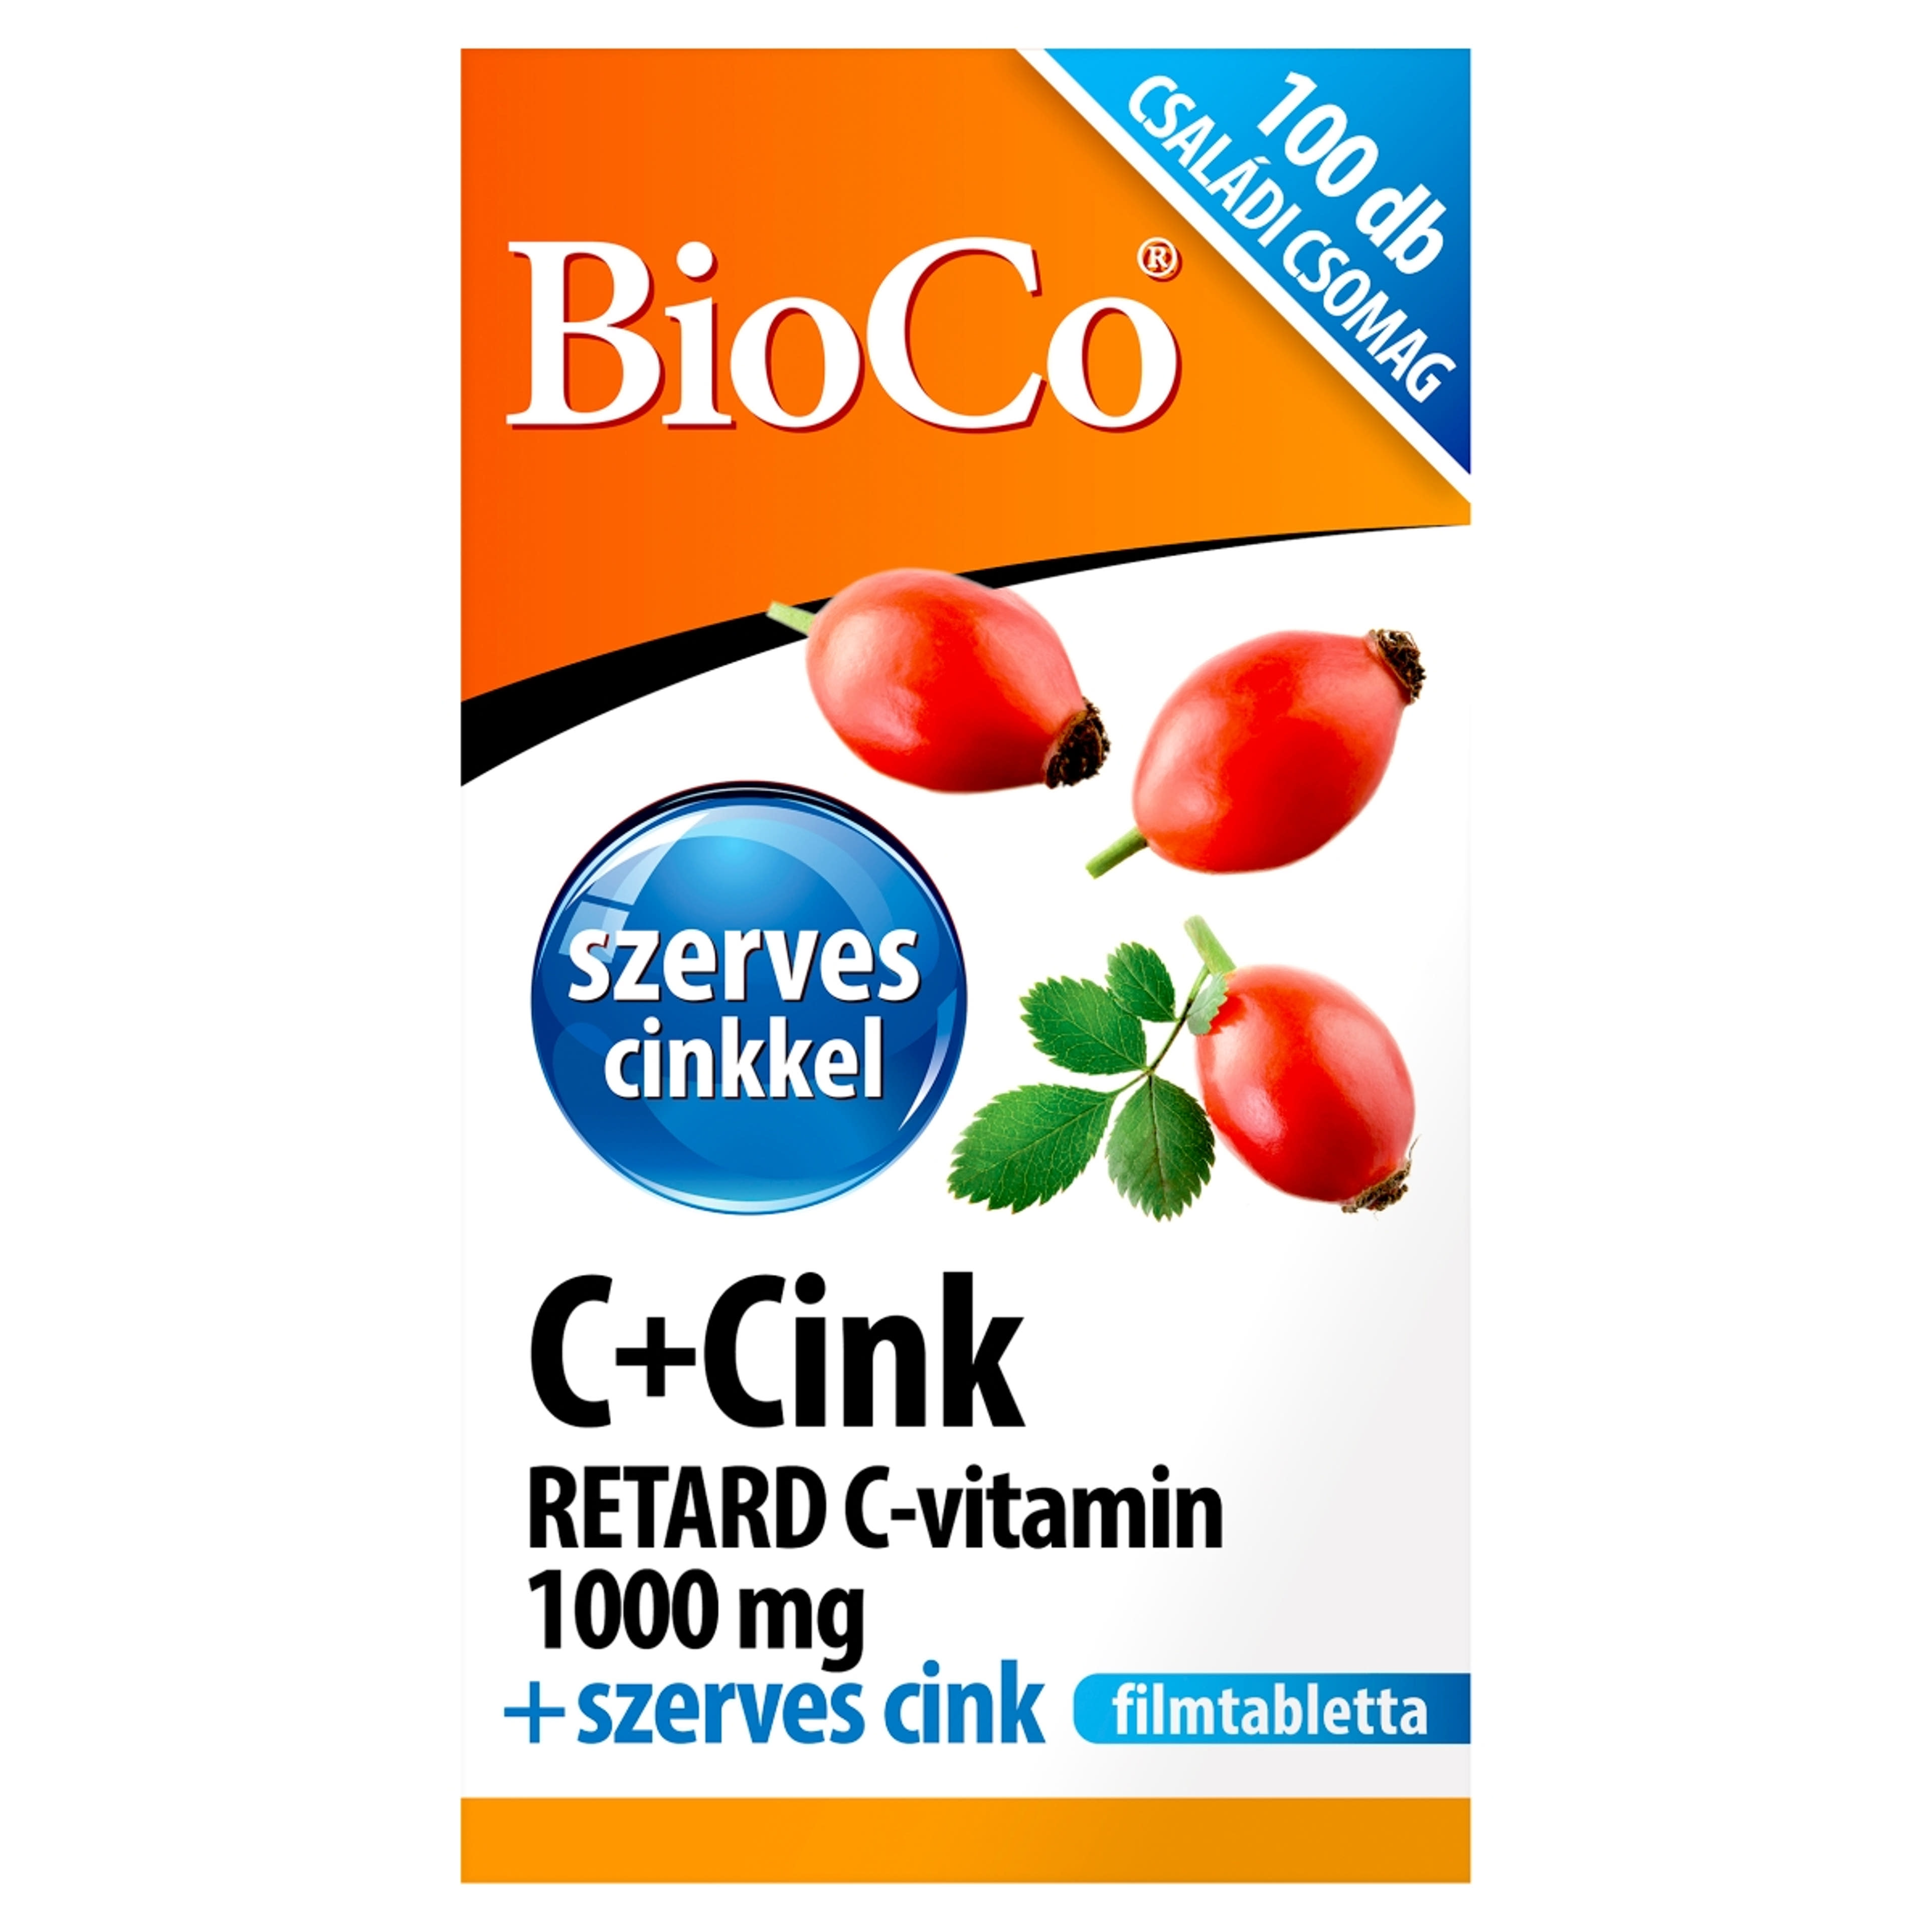 Bioco C+cink retard C-vitamin 1000 mg filmtabletta - 100 db